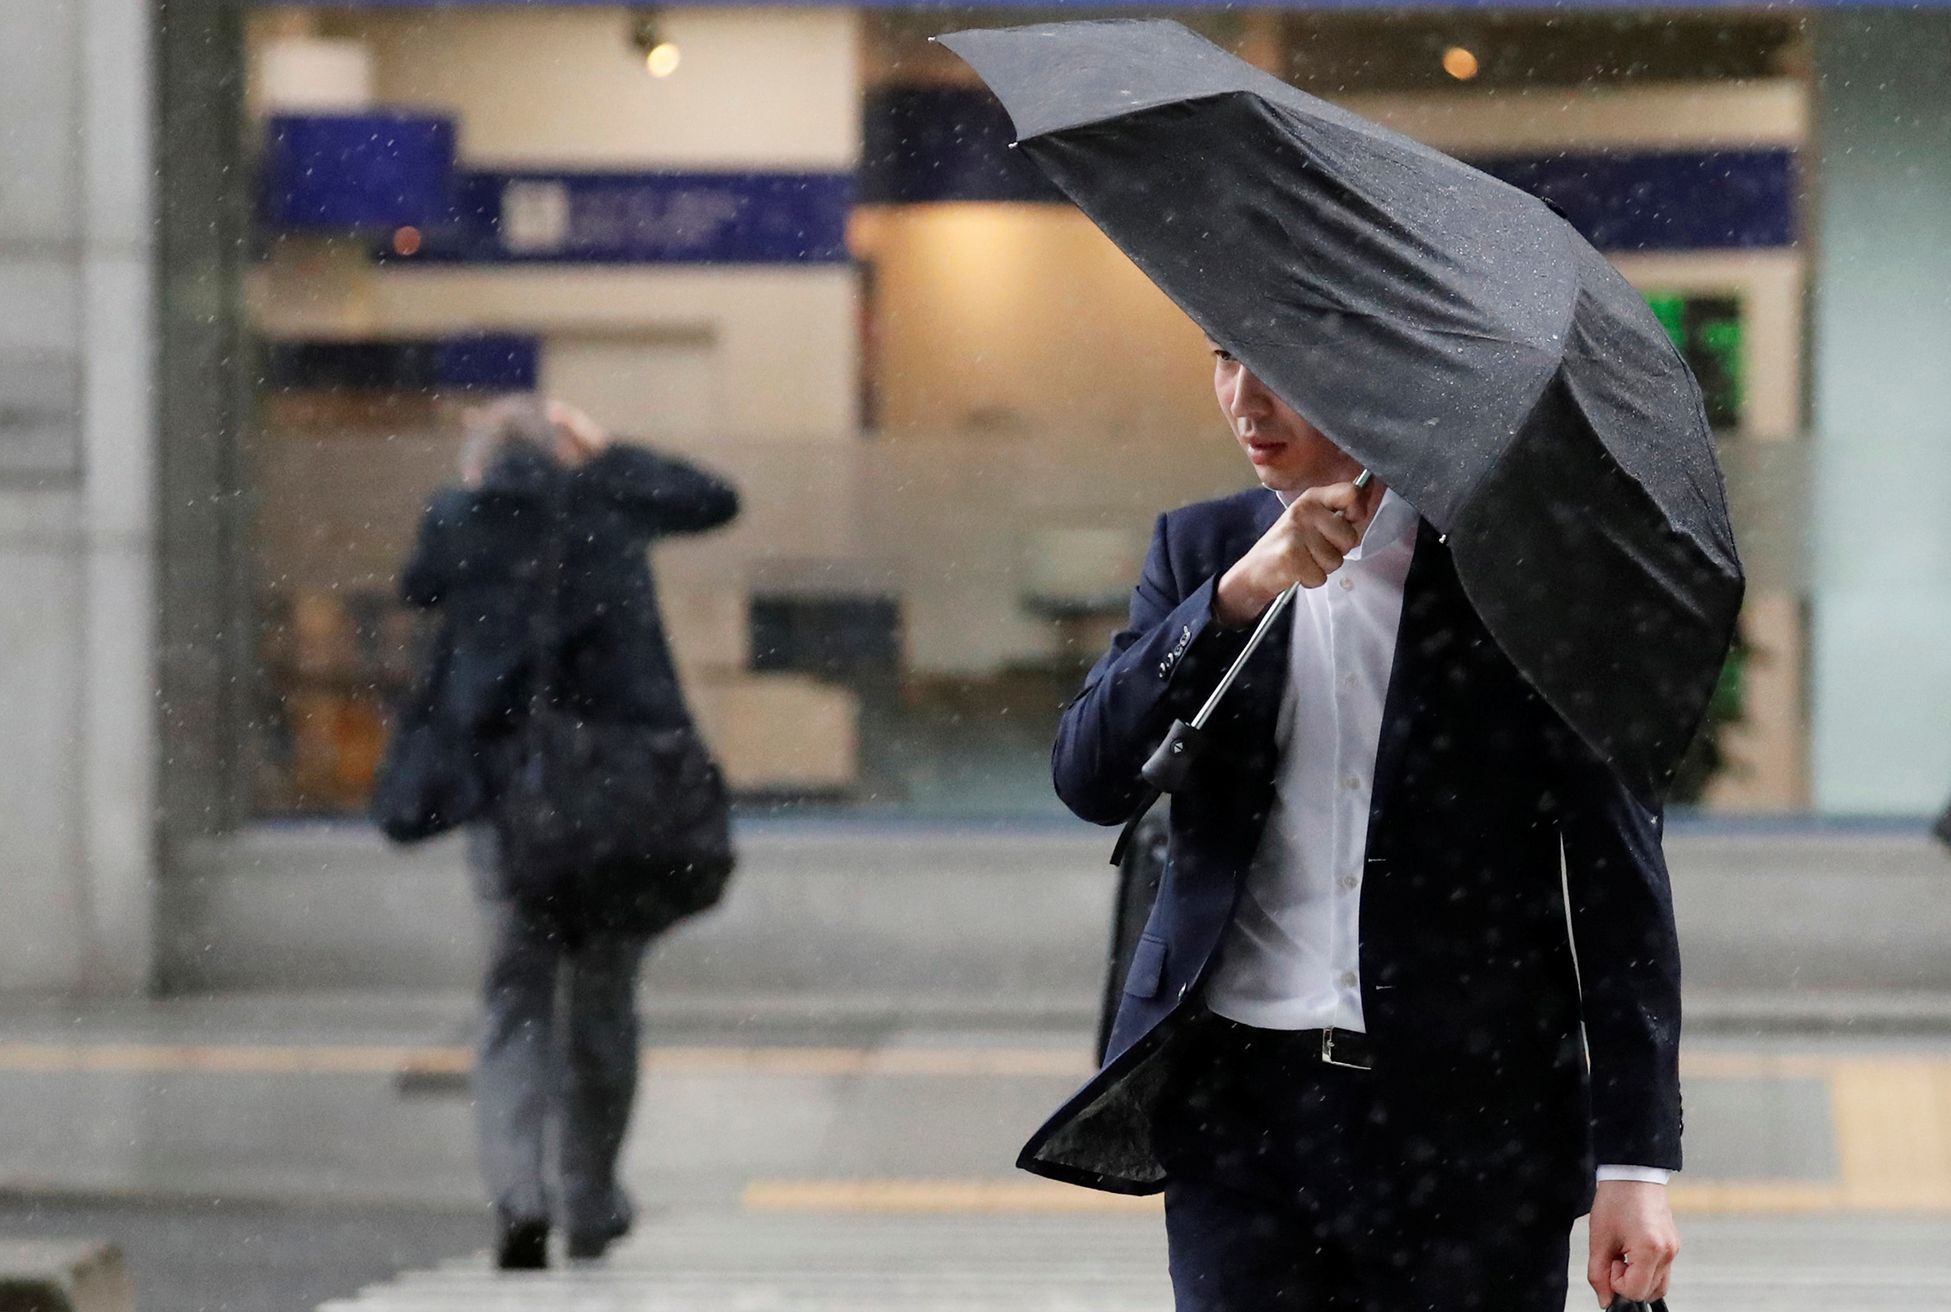 Fotogalerie / Tajfun Jebi zasáhl Japonsko / Počasí / Zahraničí / Reuters / 4. 9. 2018 / 12